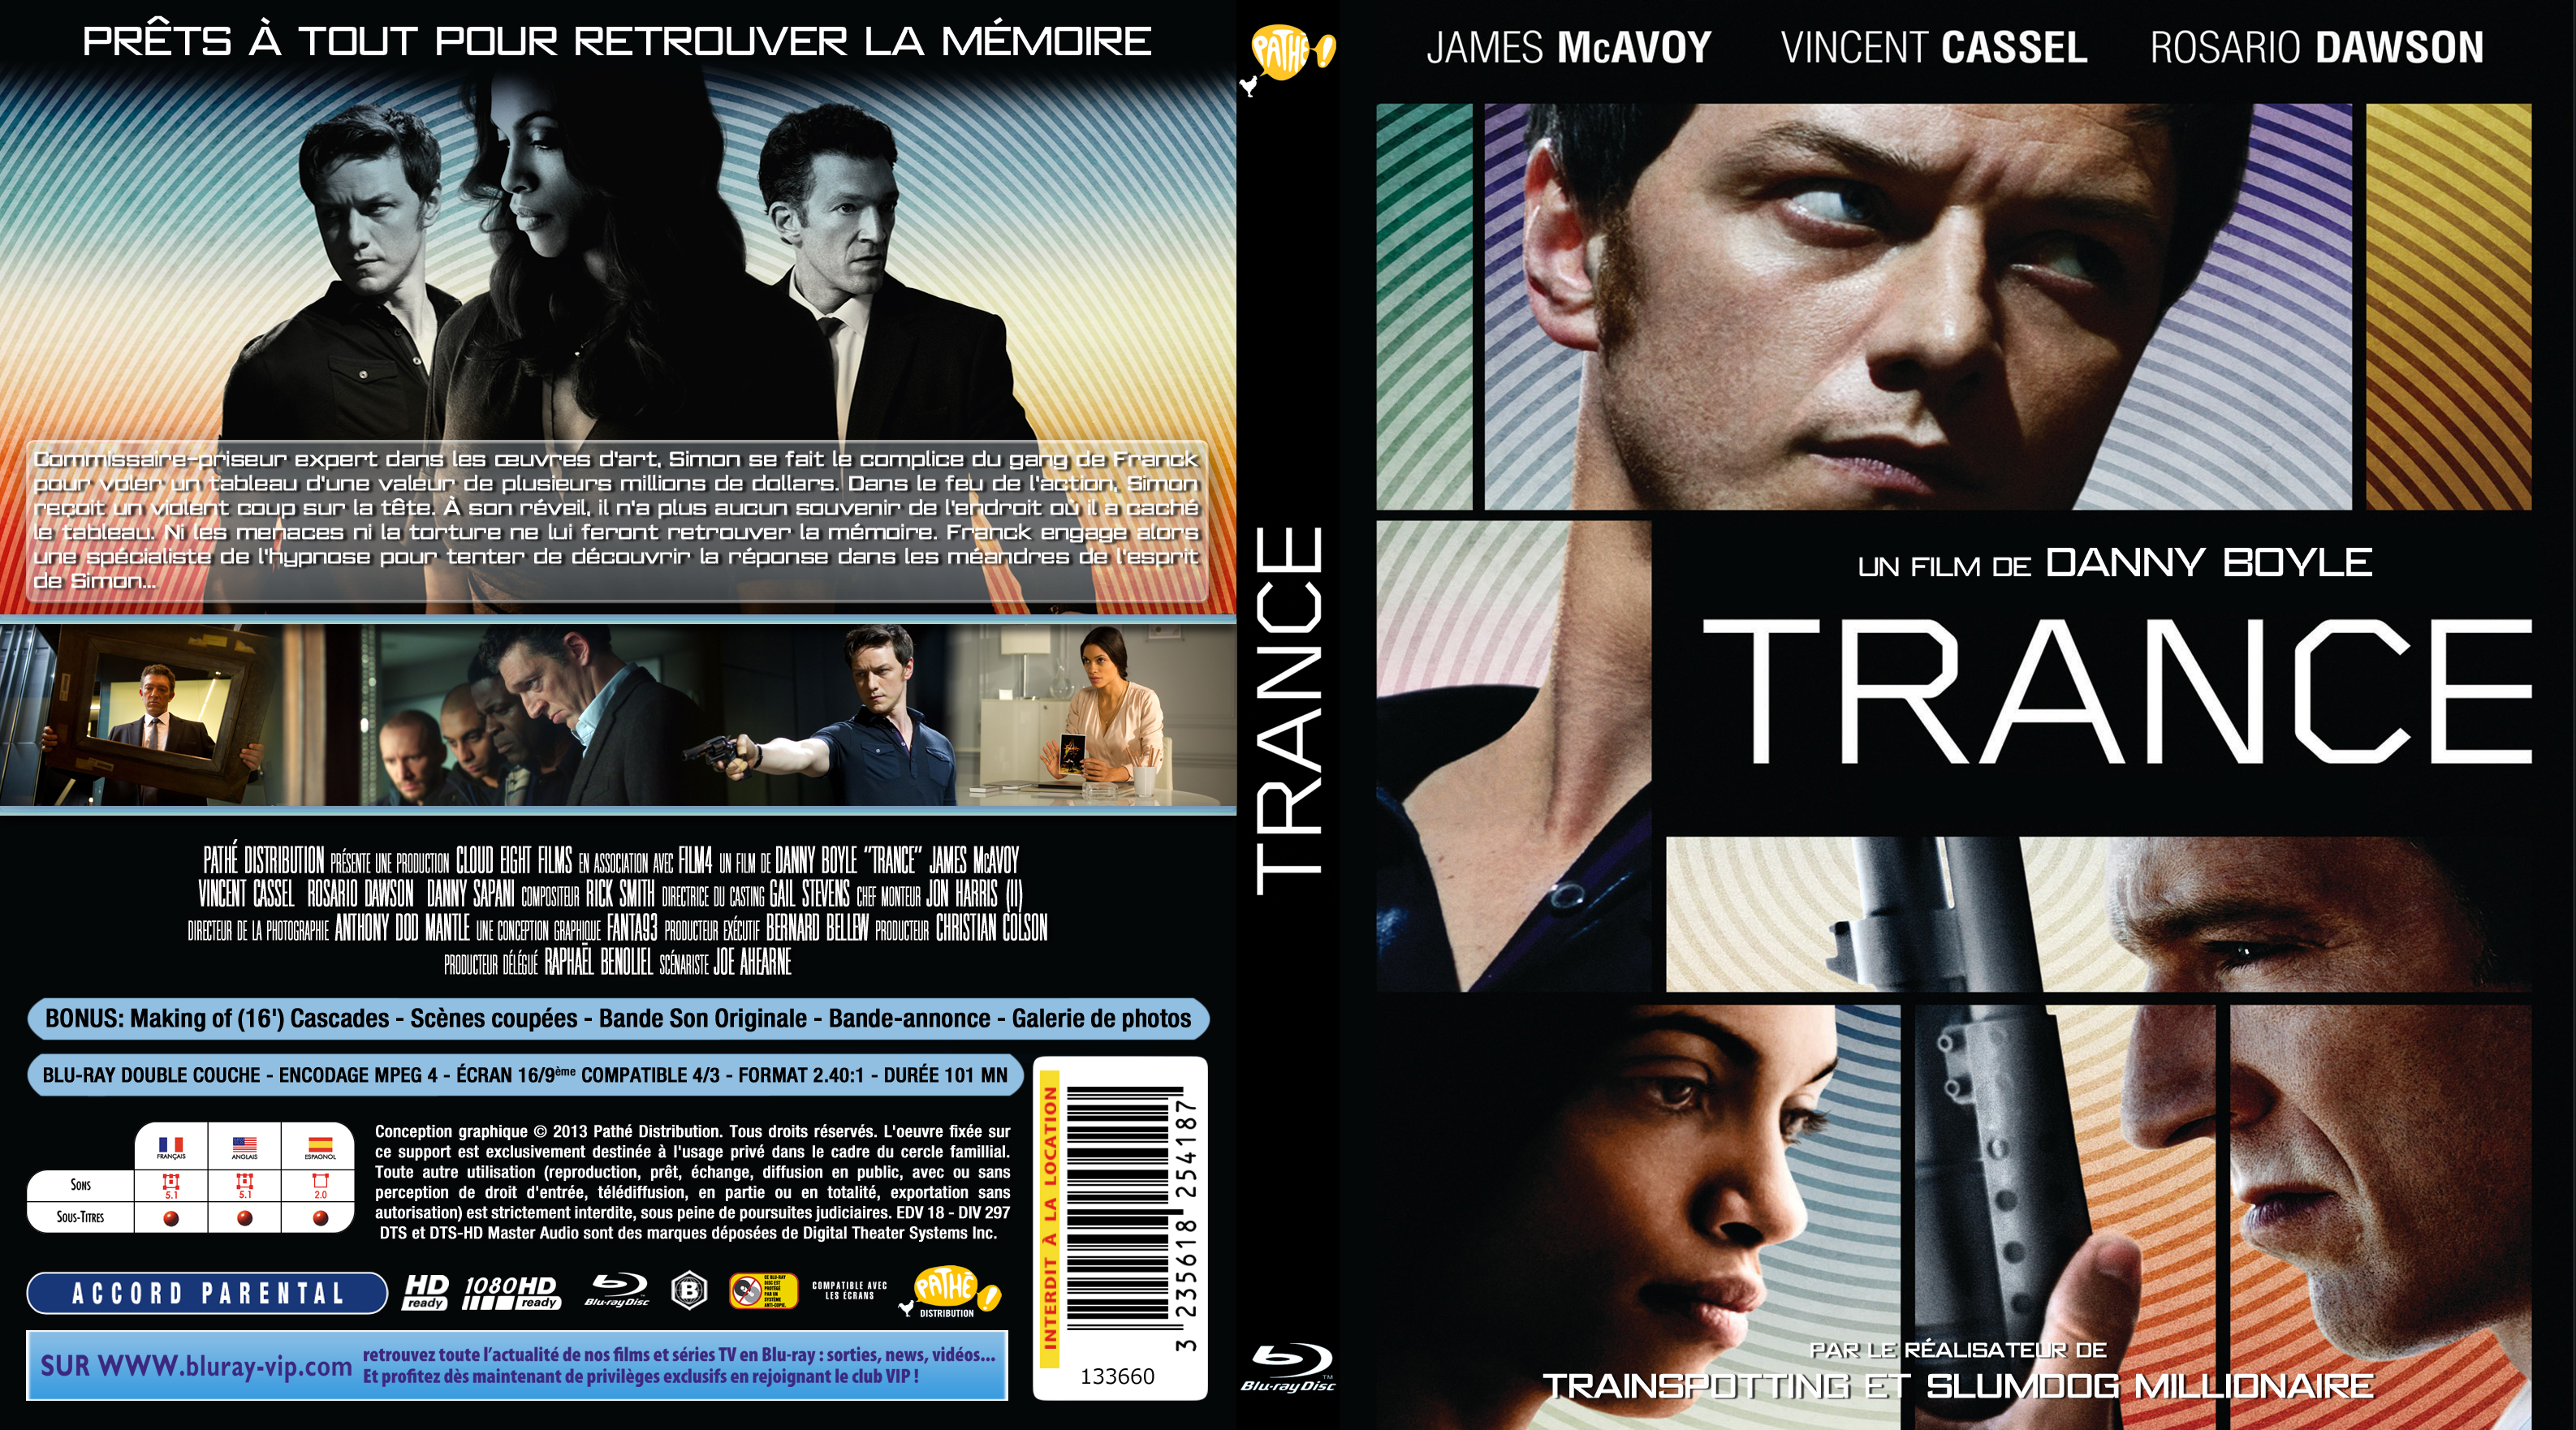 Jaquette DVD de Trance (2013) custom (BLU-RAY) - Cinéma ...